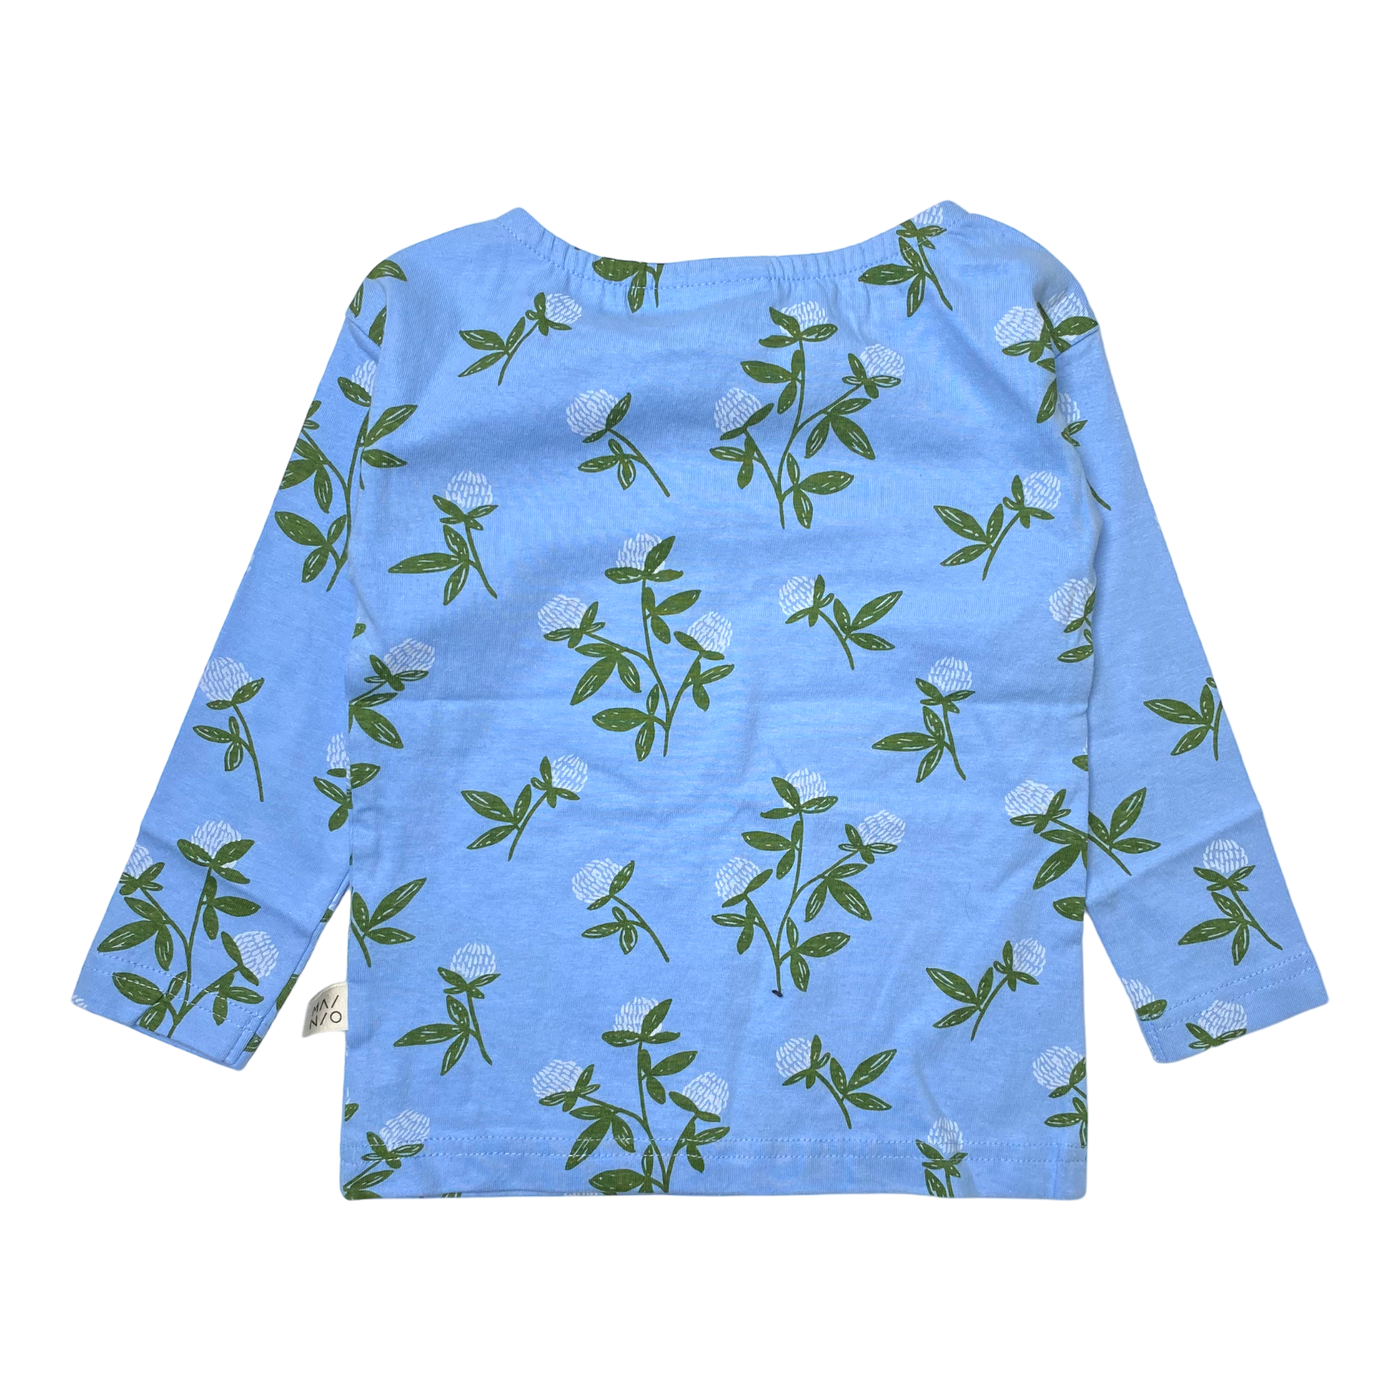 Mainio shirt, clover | 86/92cm